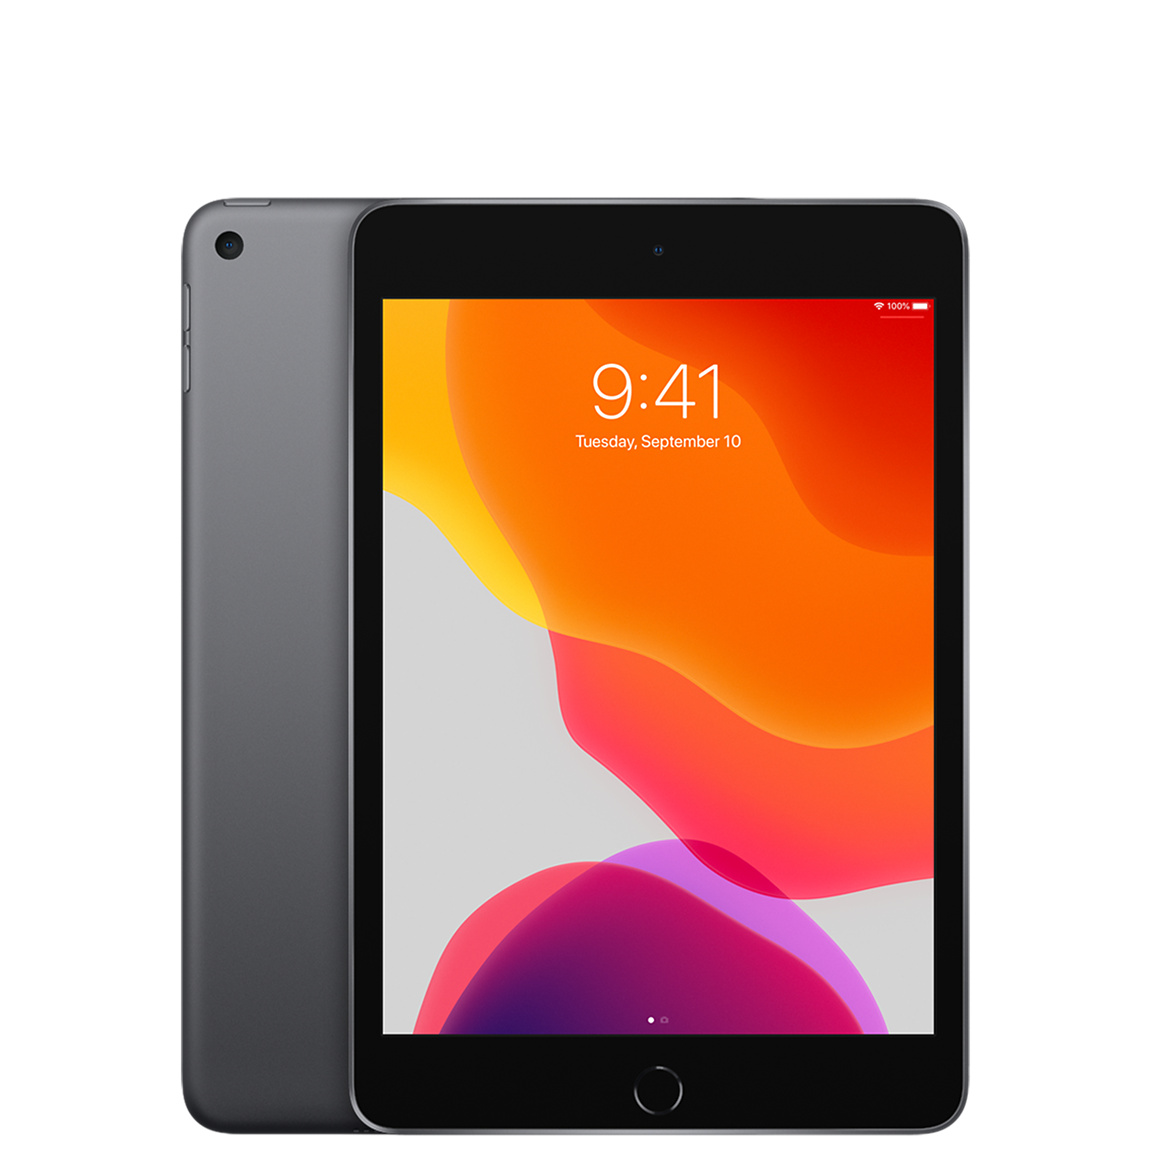 iPad Mini 5 - 7.9-inch 256GB Wi-Fi (Space Gray)